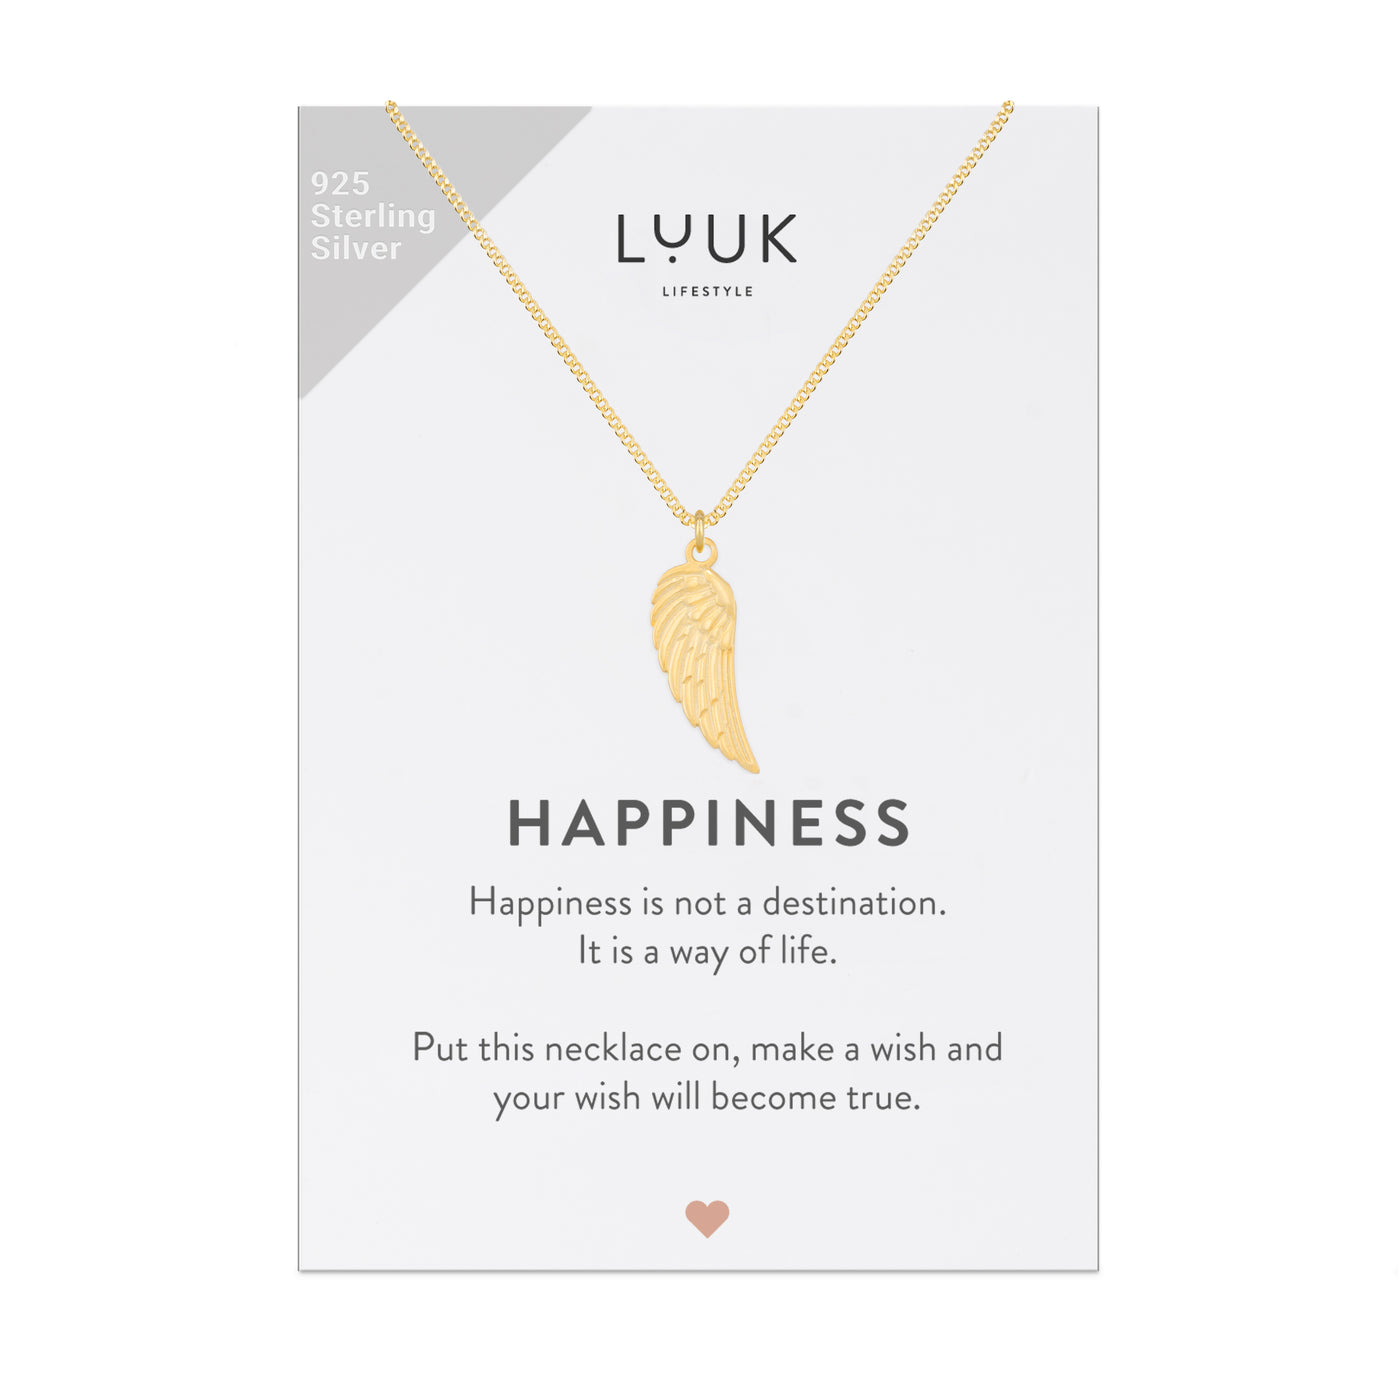 Vergoldete Halskette mit Engelsflügel Anhänger auf motivierender Happiness Spruchkarte von der Marke Luuk Lifestyle 